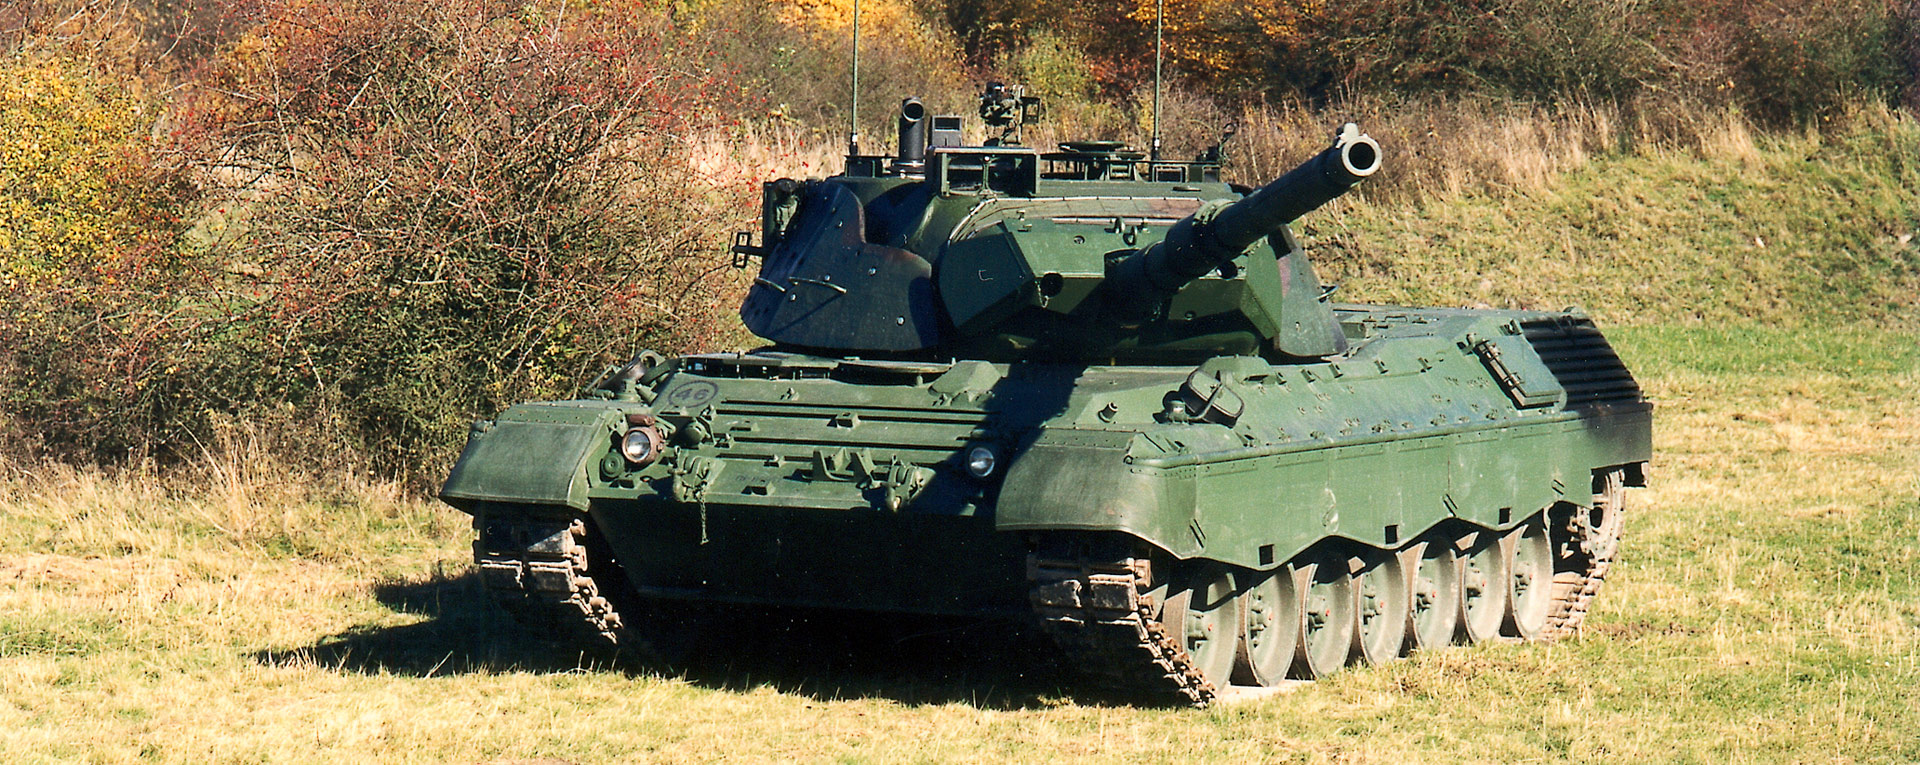 KPz Leopard 1